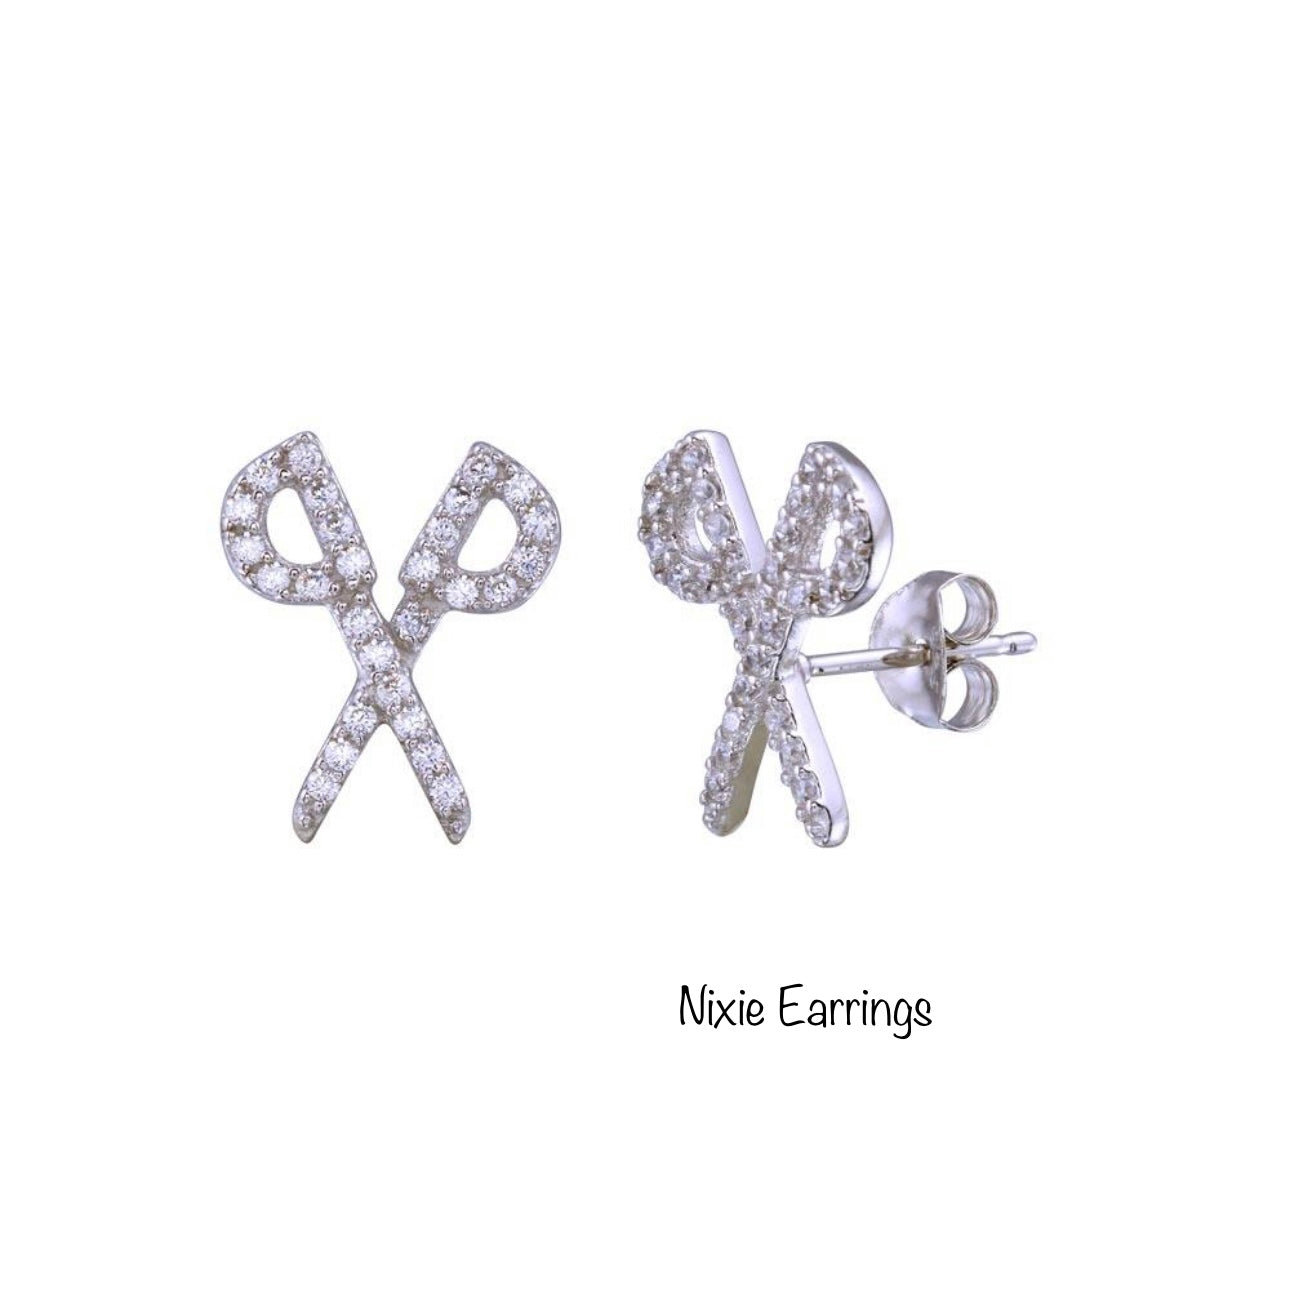 Nixie Earrings